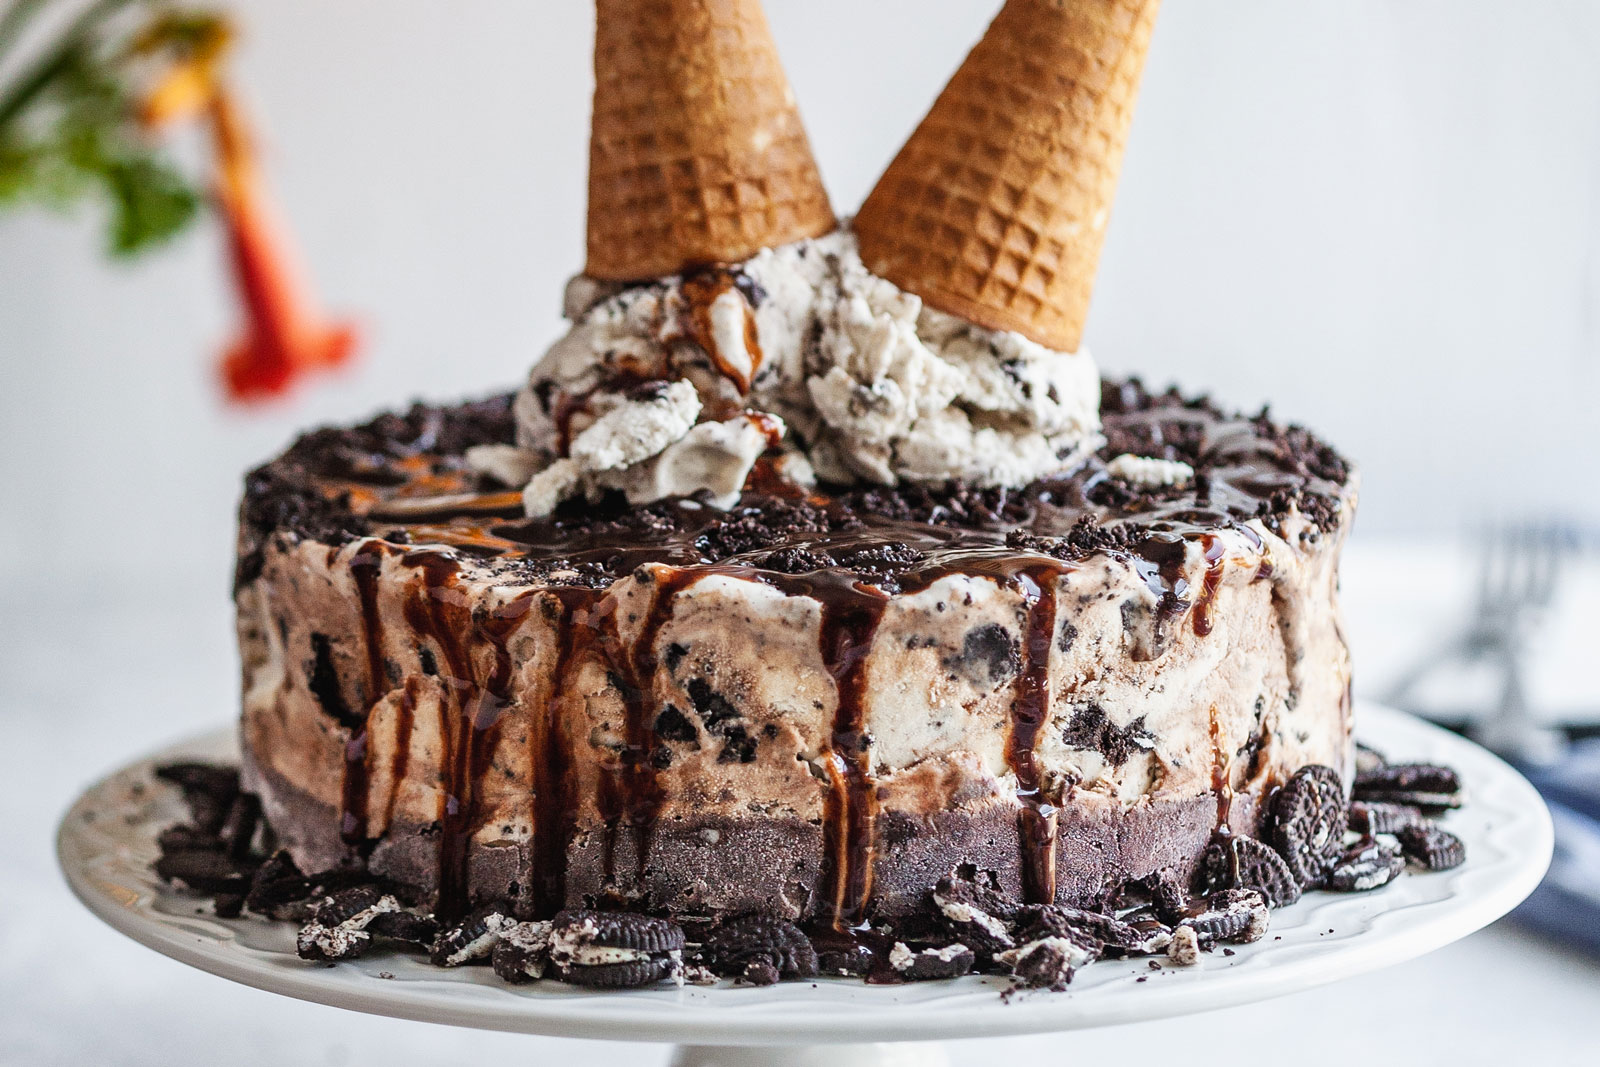 Oreo Ice Cream Cake - Eating Gluten and Dairy Free